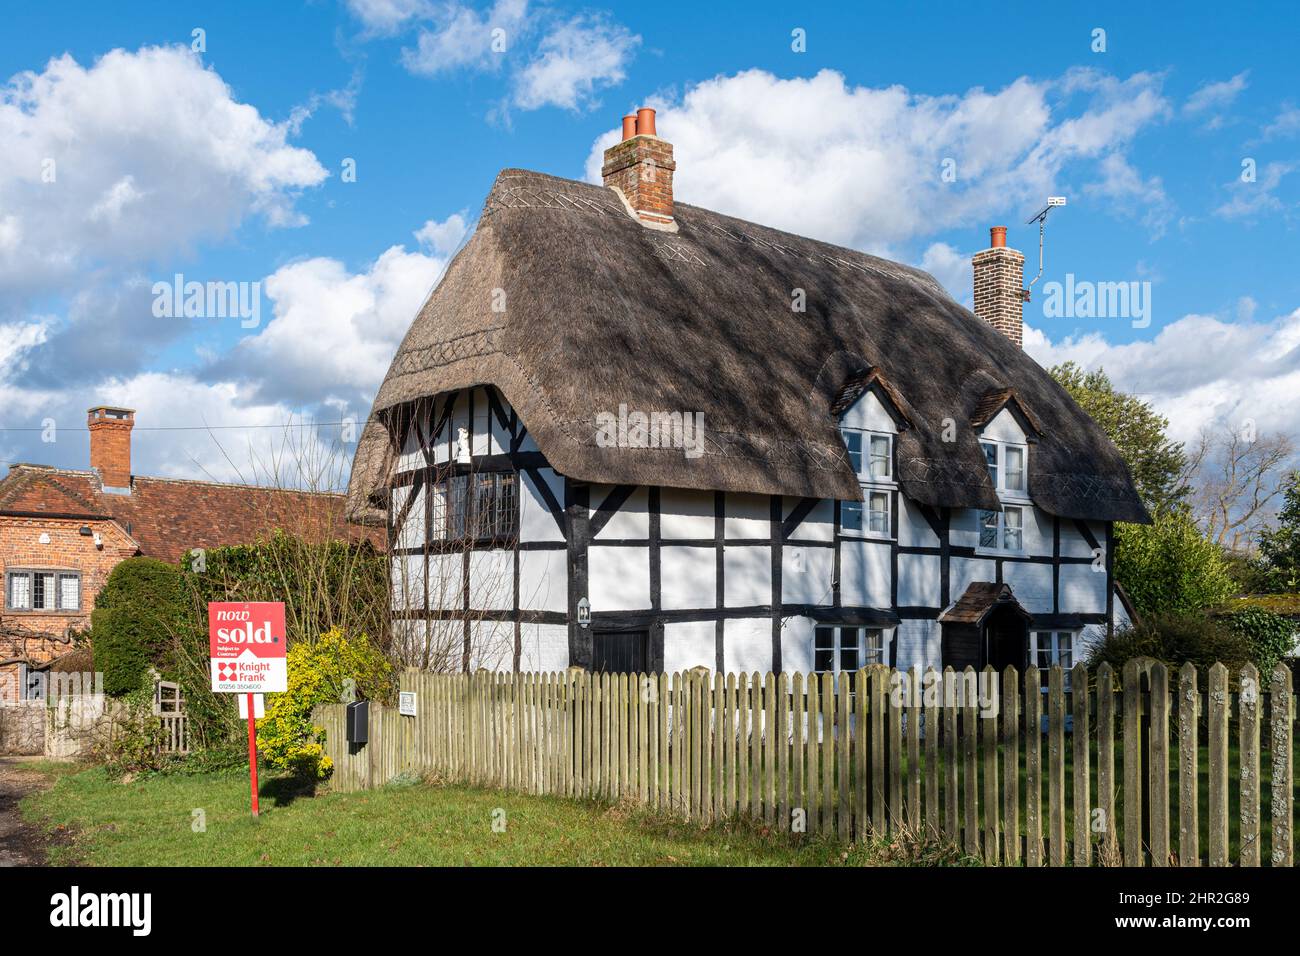 Jolie petite maison de chaume rurale dans le village de Froyle avec signe vendu, Hampshire, Angleterre, Royaume-Uni Banque D'Images